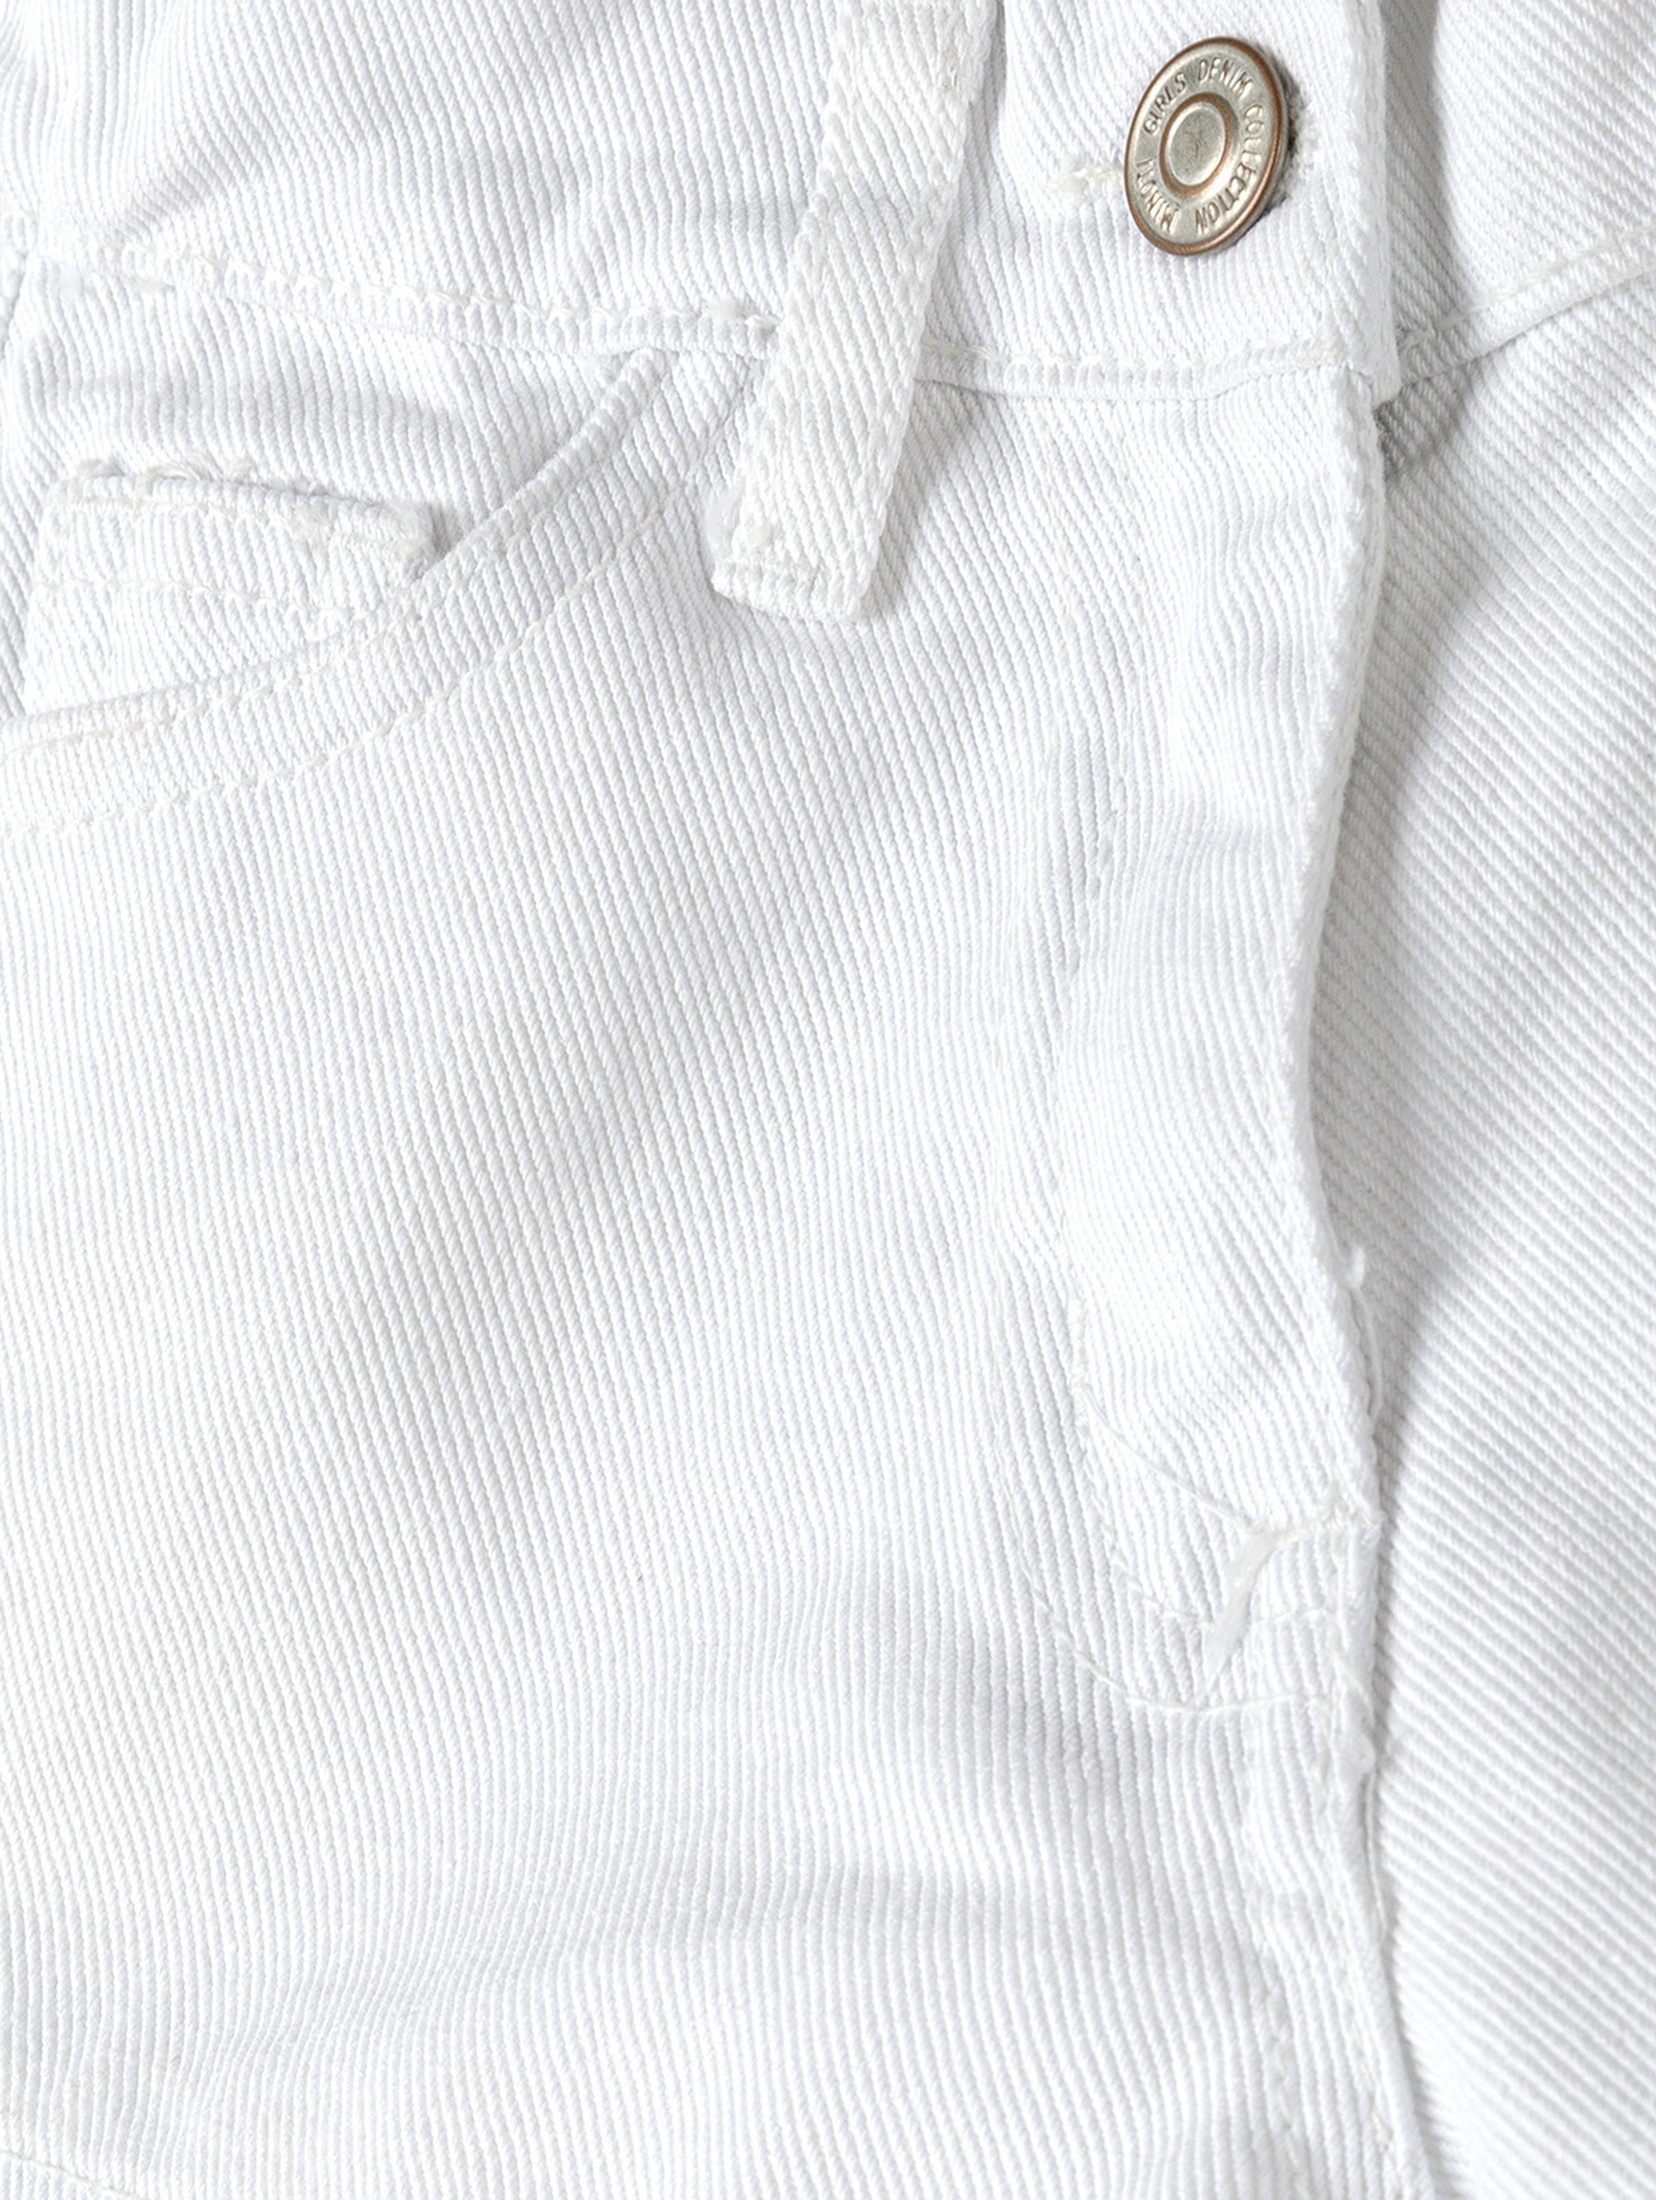 Białe krótkie spodenki jeansowe dla niemowlaka